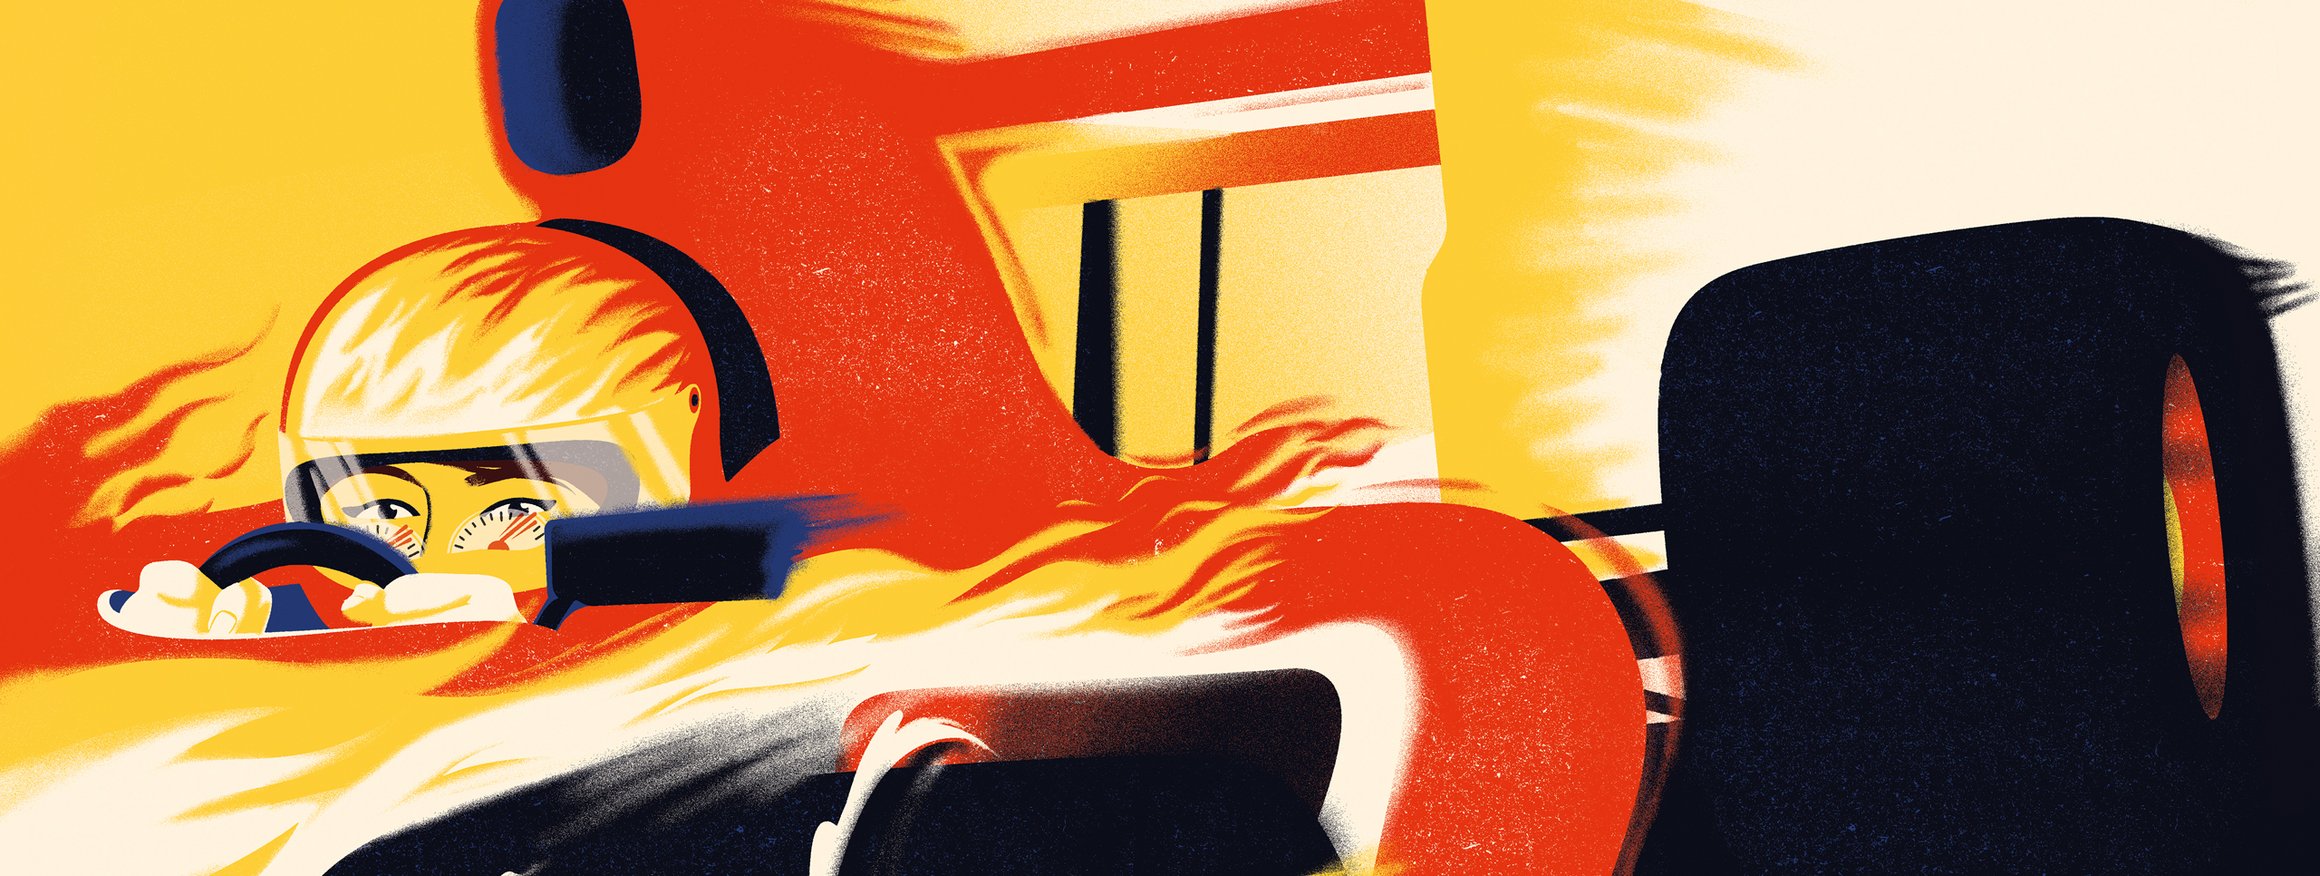 Die Illustration zeigt einen Rennwagenfahrer mit Helm, der in einem brennenden Wagen sitzt und rast